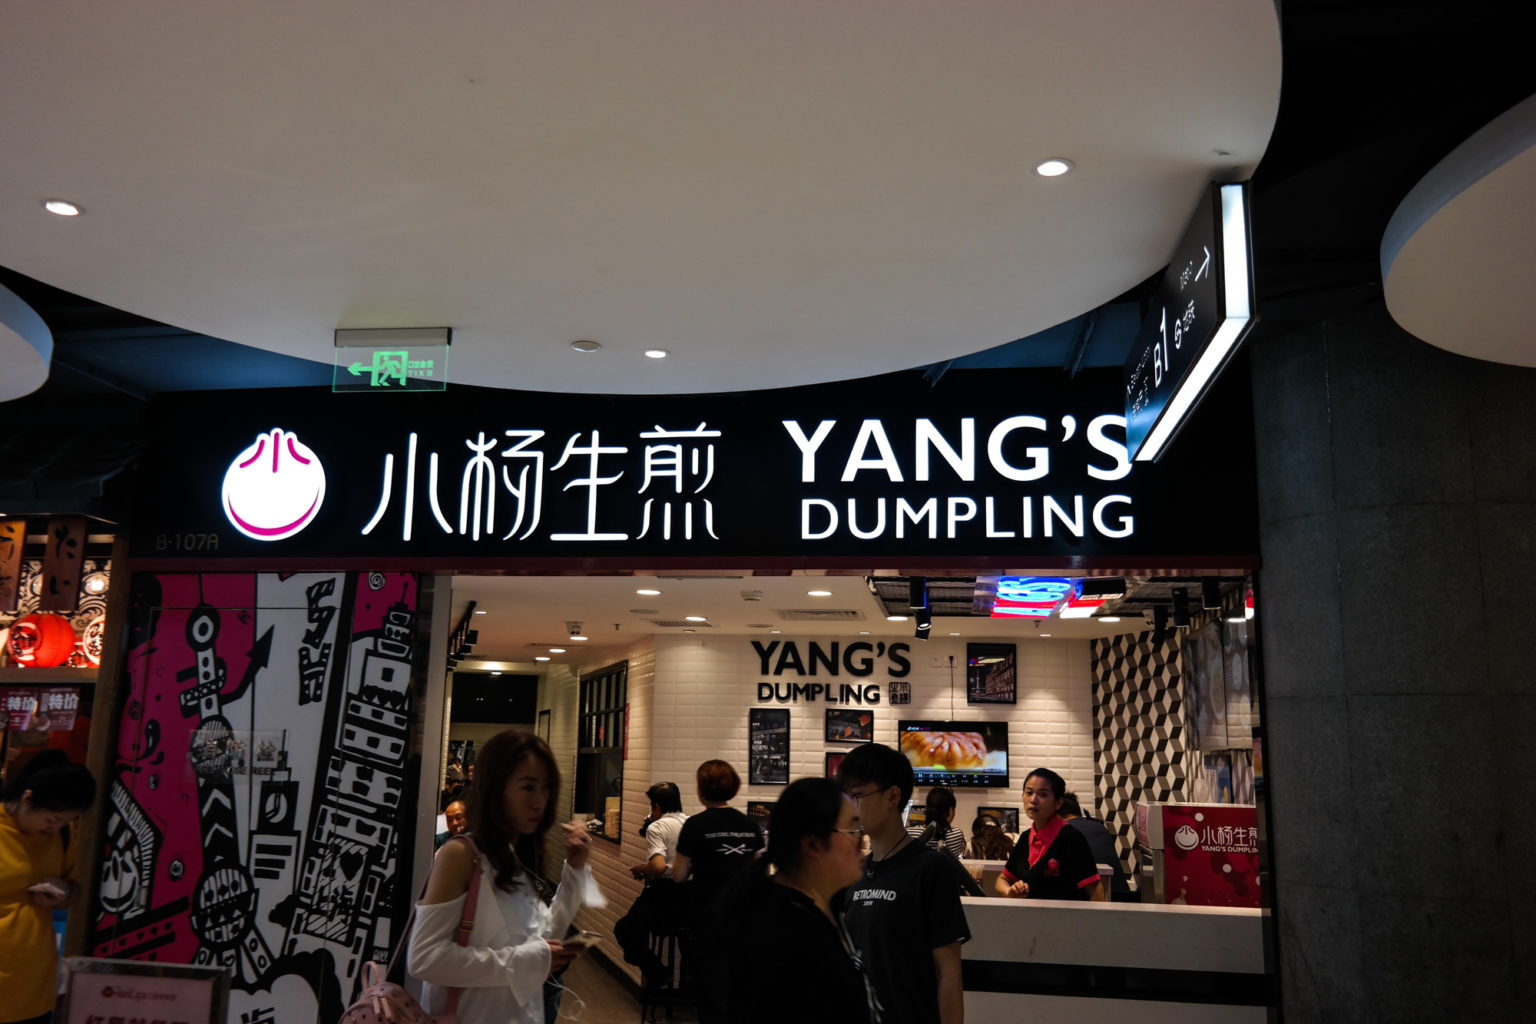 Yang's Dumpling